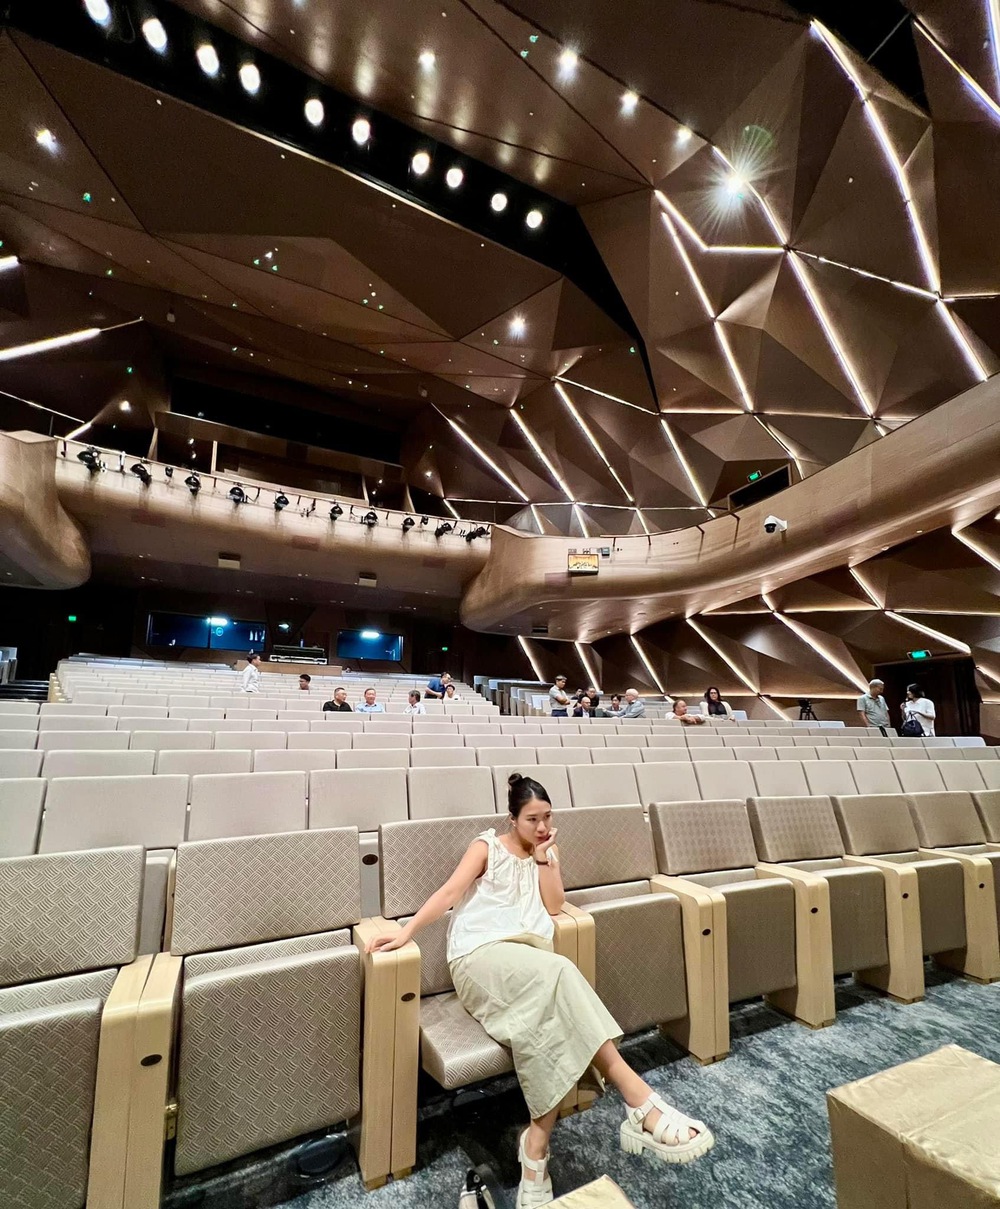 Công trình nhà hát mới tại Hà Nội: giao thoa văn hoá mạnh mẽ, chinh phục giới trẻ từ cái nhìn đầu tiên - Ảnh 25.